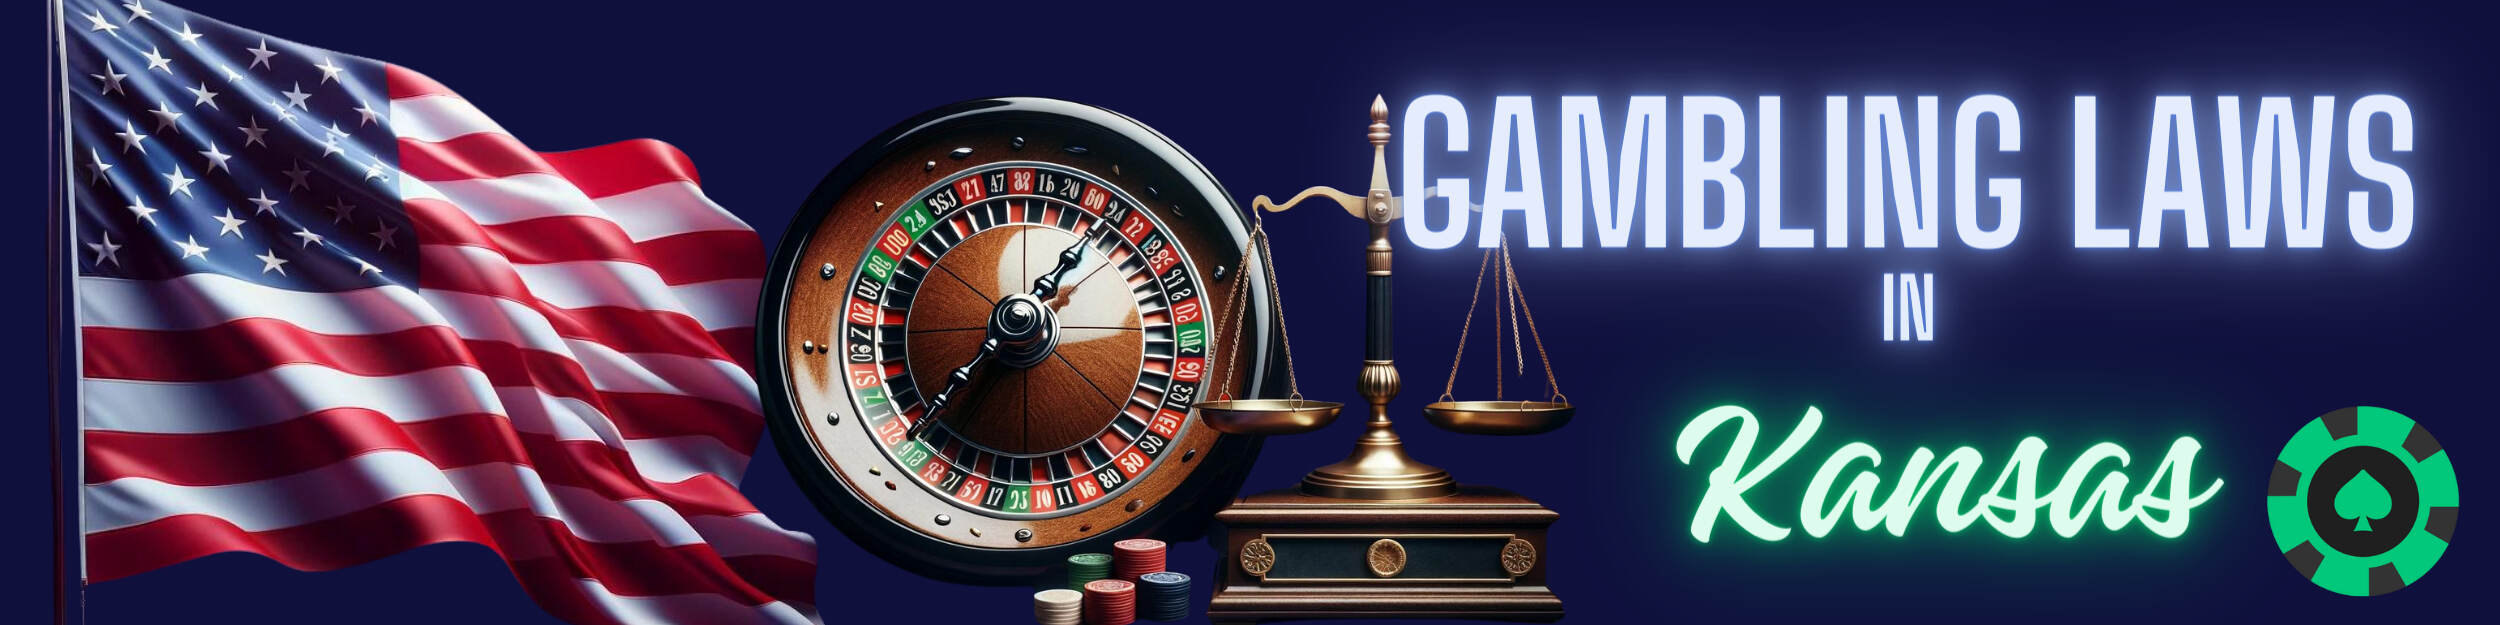 Gambling Laws in Kansas